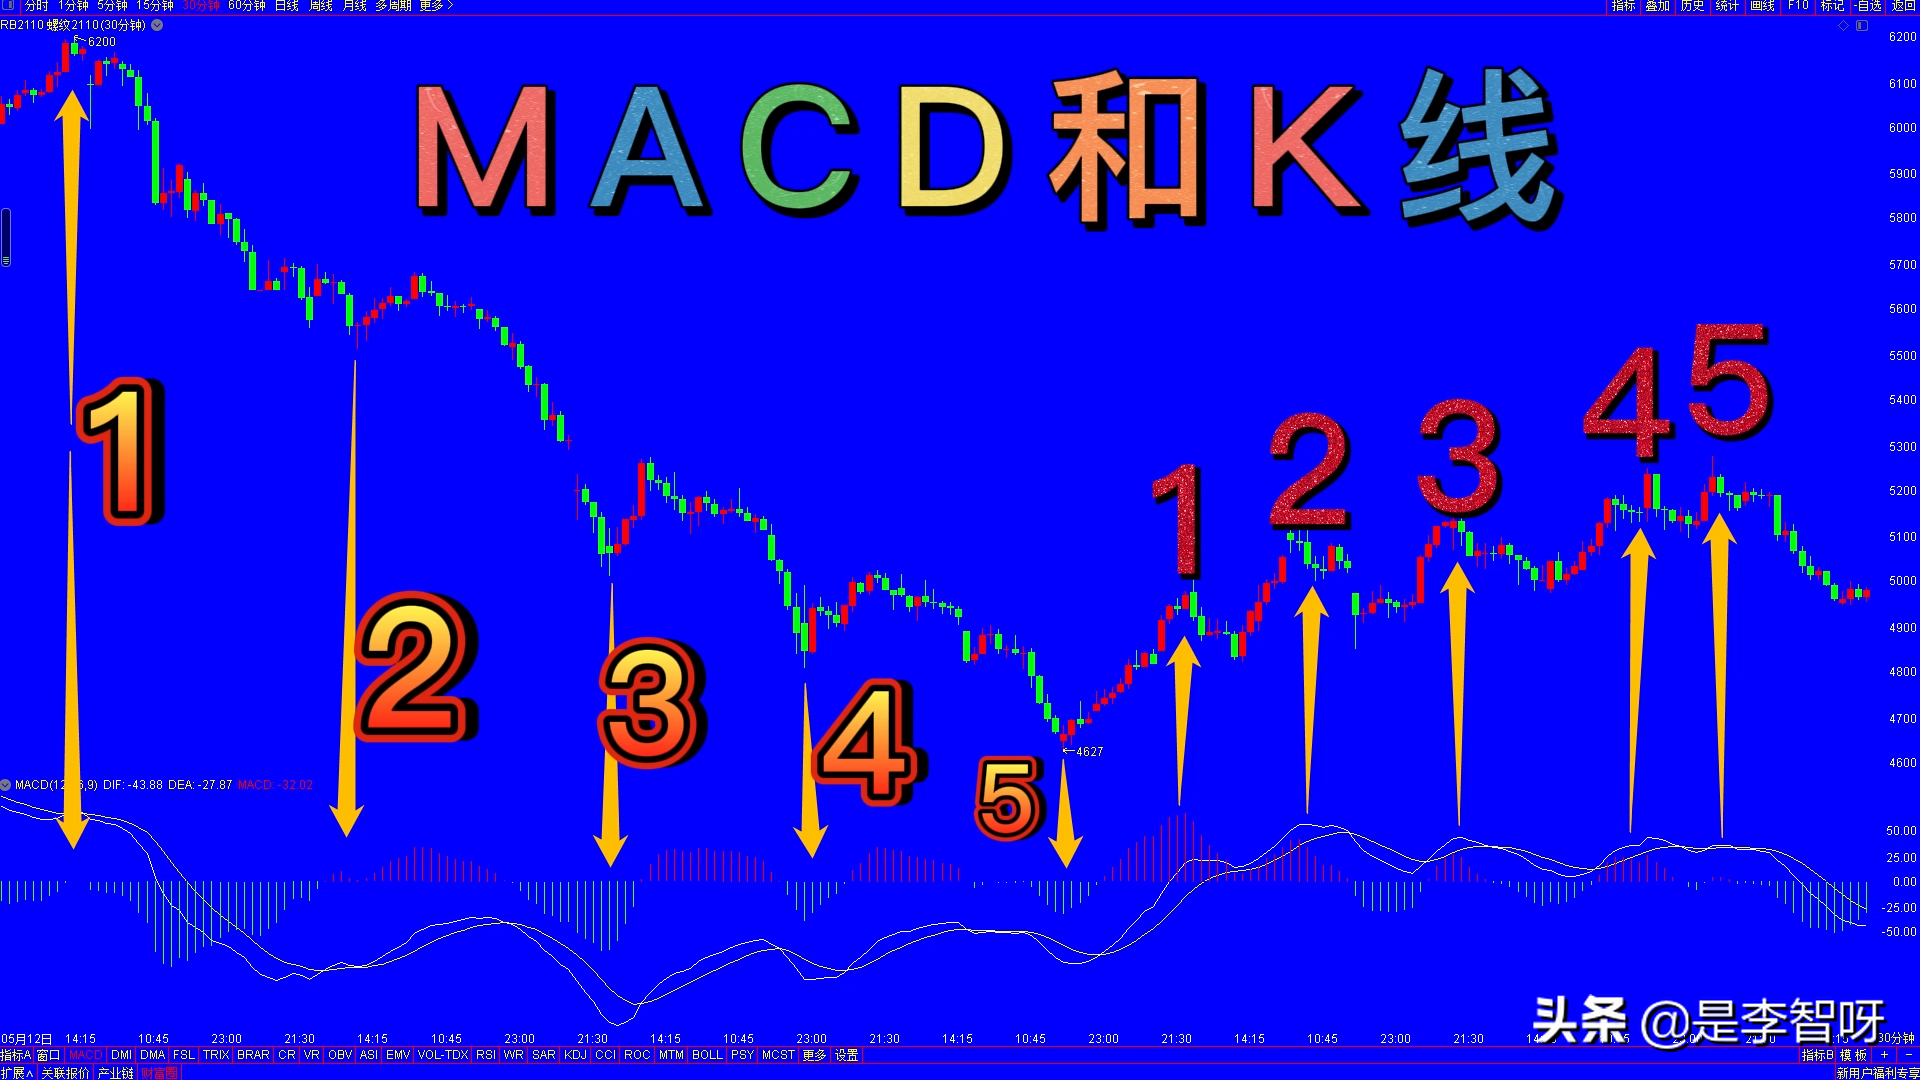 分析股票和期货走势，3分钟看懂怎么使用MACD这个技术指标